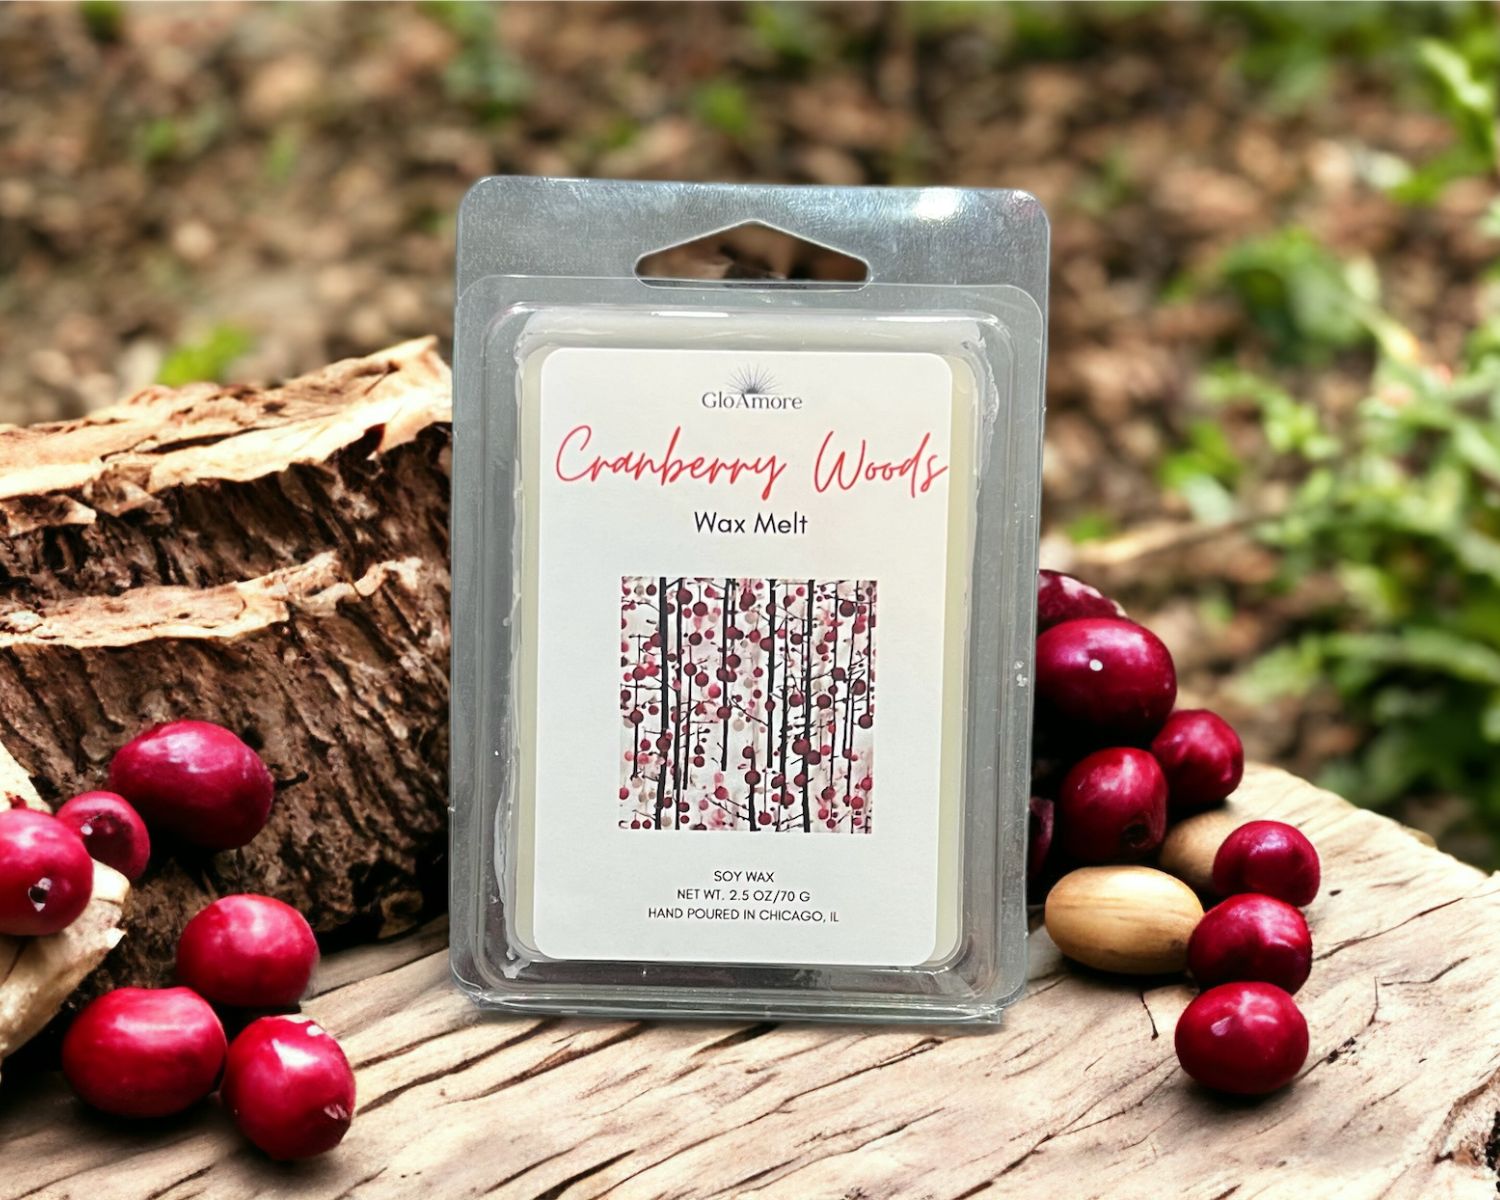 Cranberry Woods Wax Melt